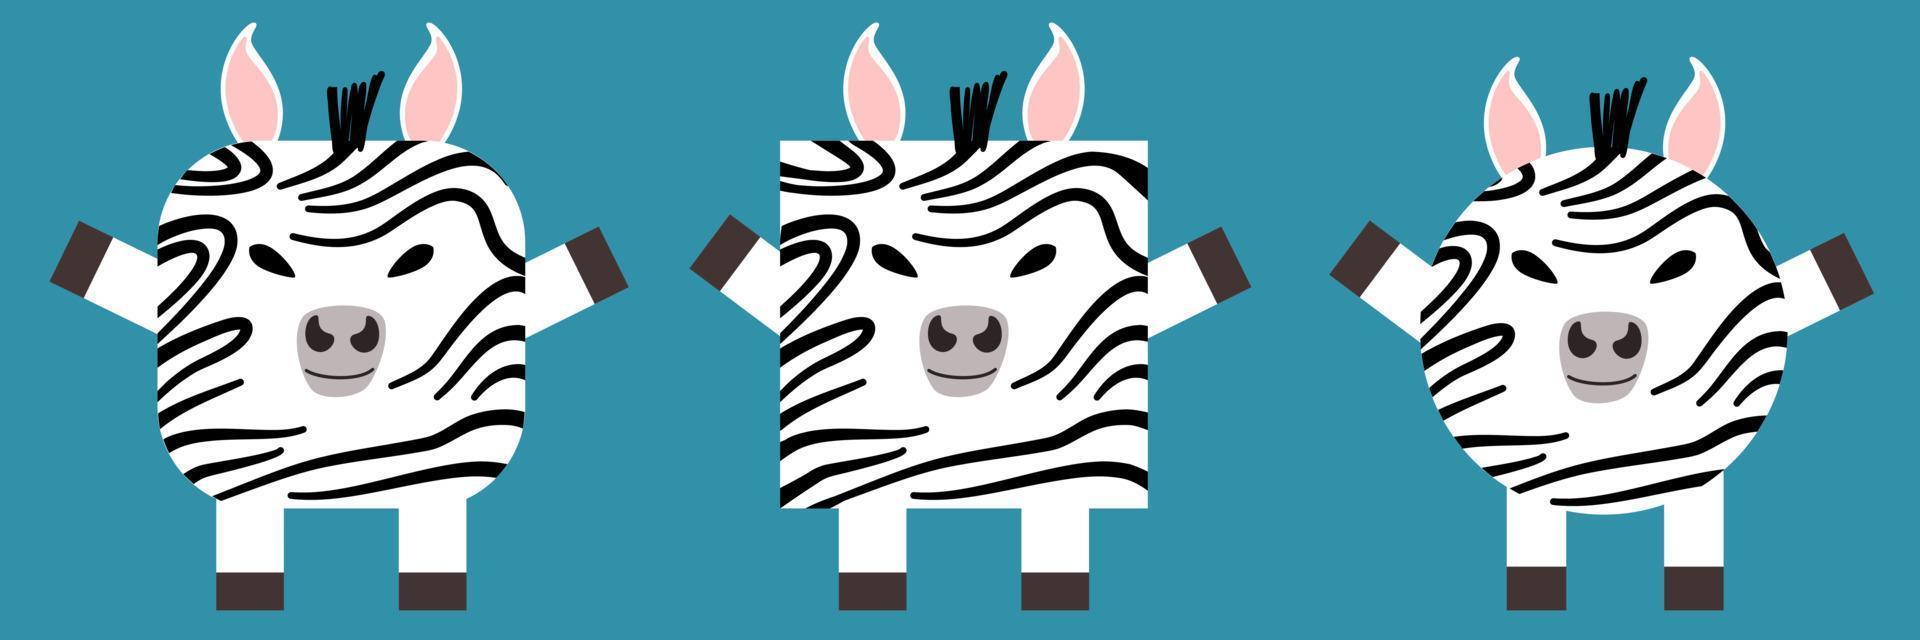 en uppsättning djur av fyrkantig och rund form. vektor illustration av en zebra